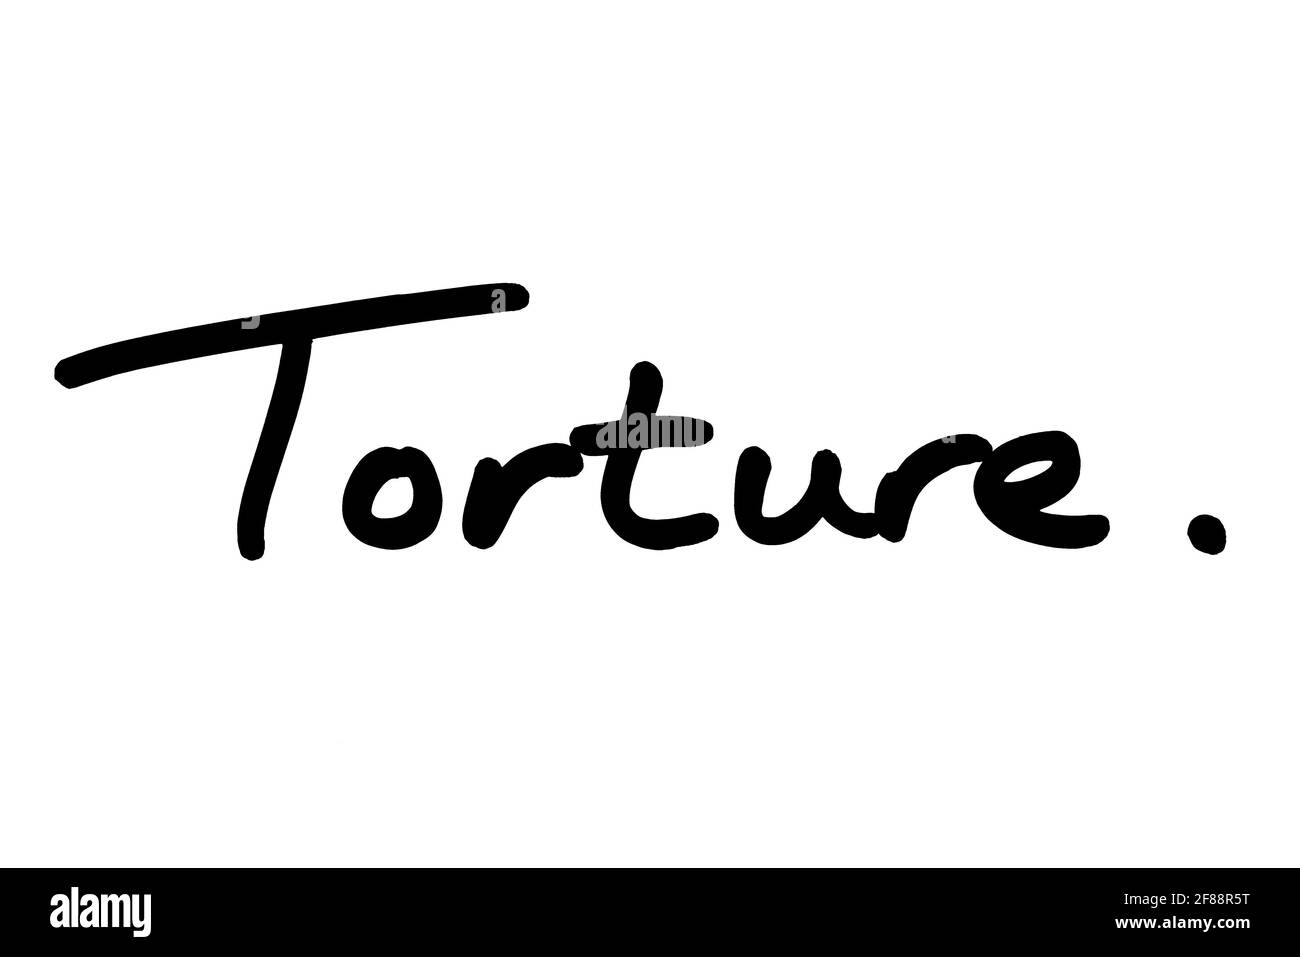 Folter, handgeschrieben auf weißem Hintergrund. Stockfoto